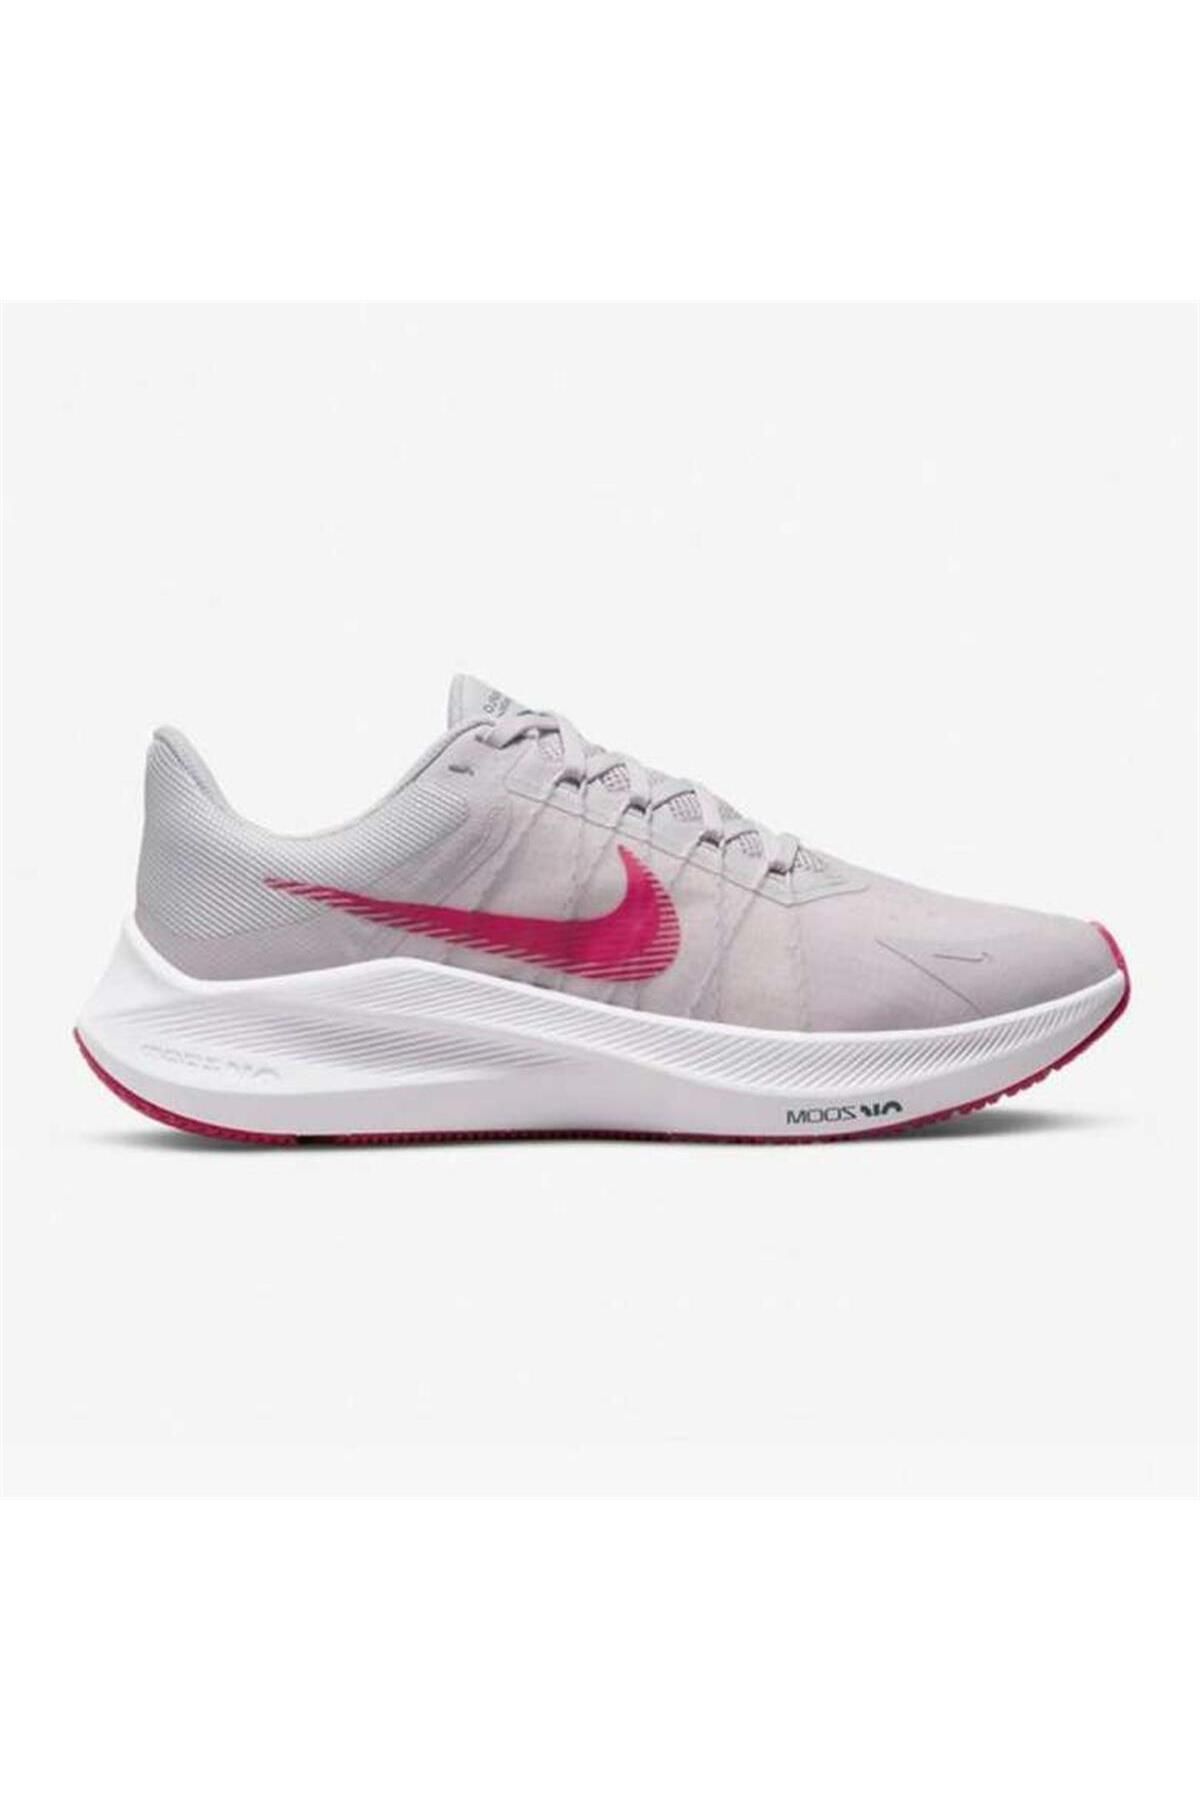 Nike Zoom Kadın Spor Pembe Ayakkabı Cw3421-503